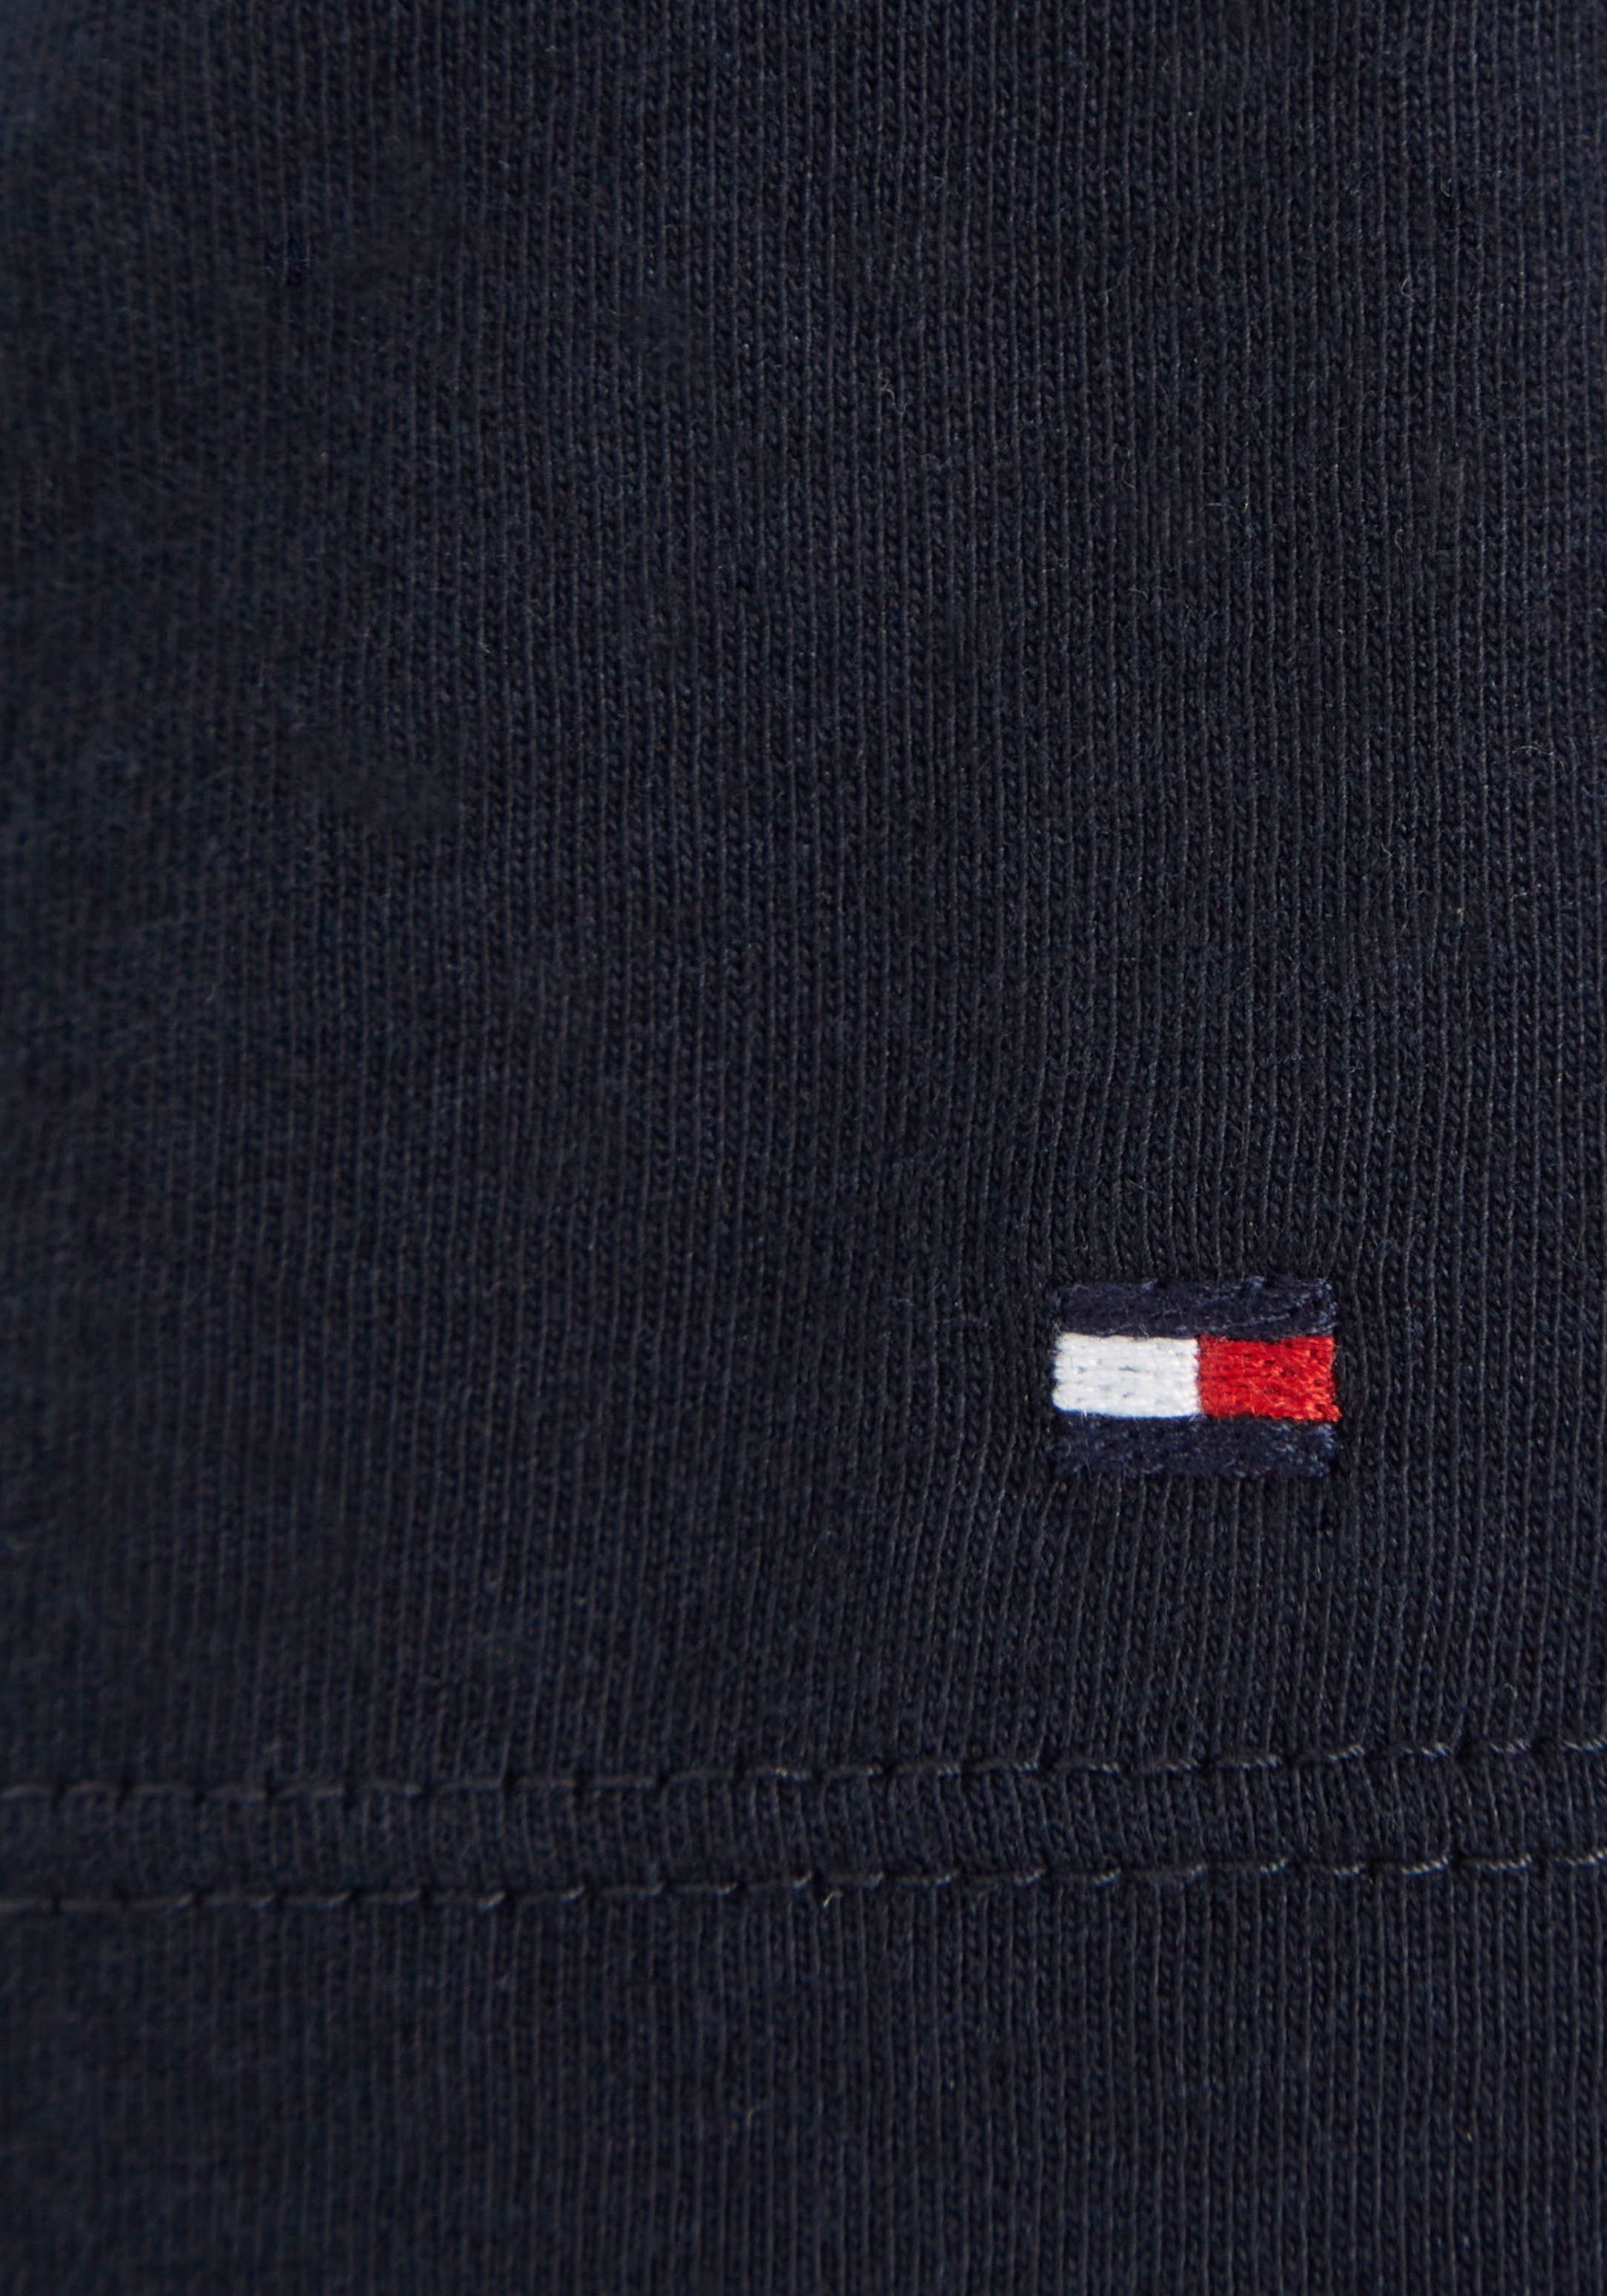 Tommy Hilfiger S/S mit modischem TEE der Hilfiger-Logoschriftzug MONOTYPE T-Shirt Brust dunkelblau auf